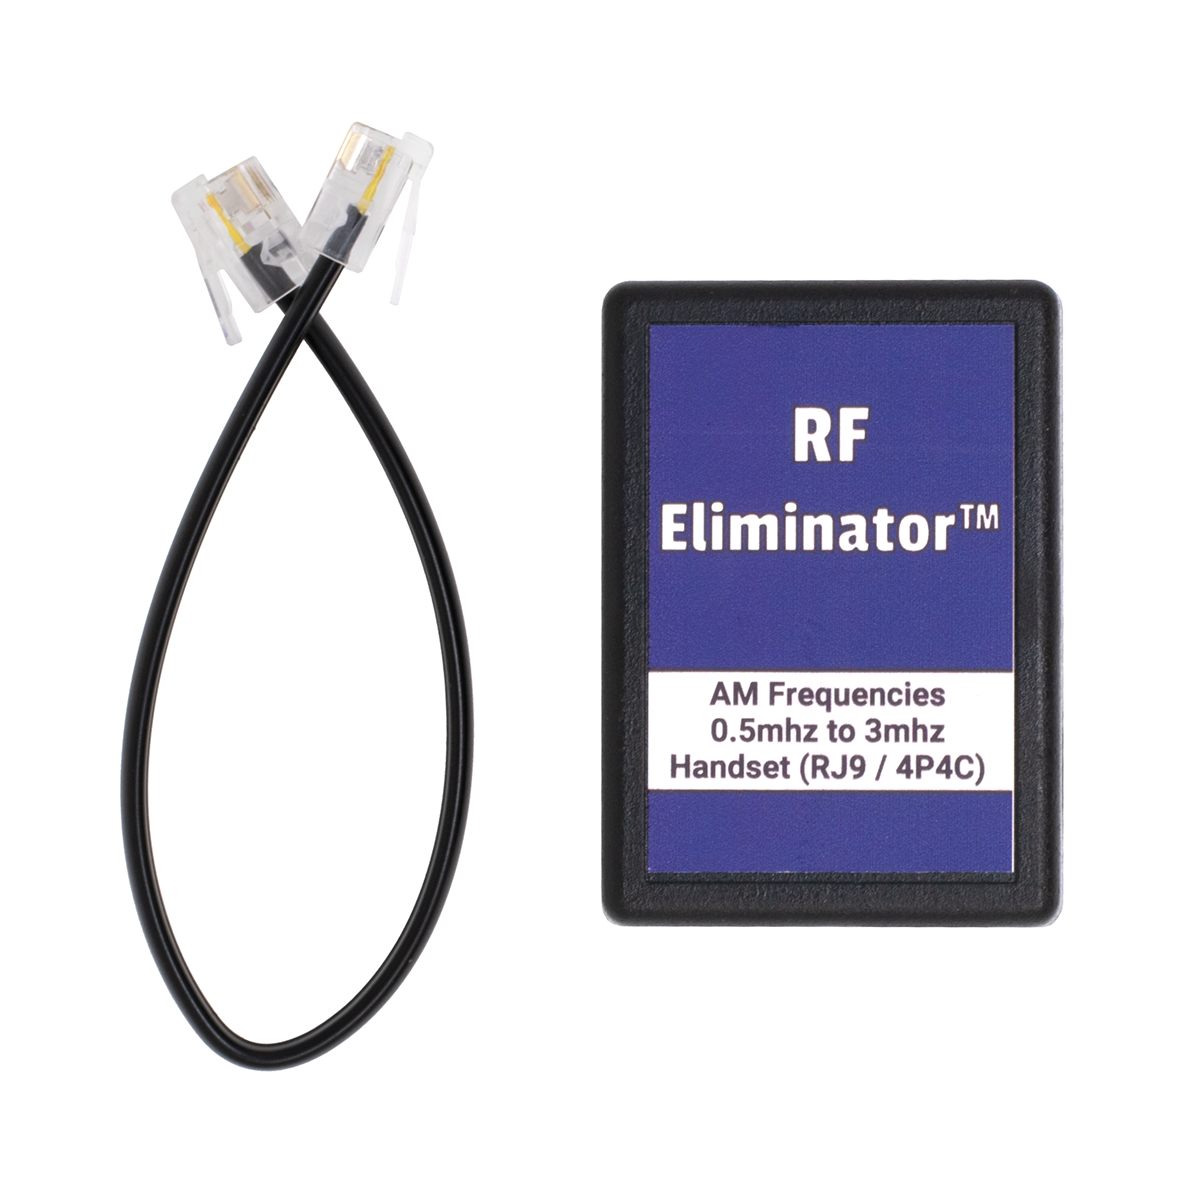 RF Eliminator - Handset - AM (Top View)